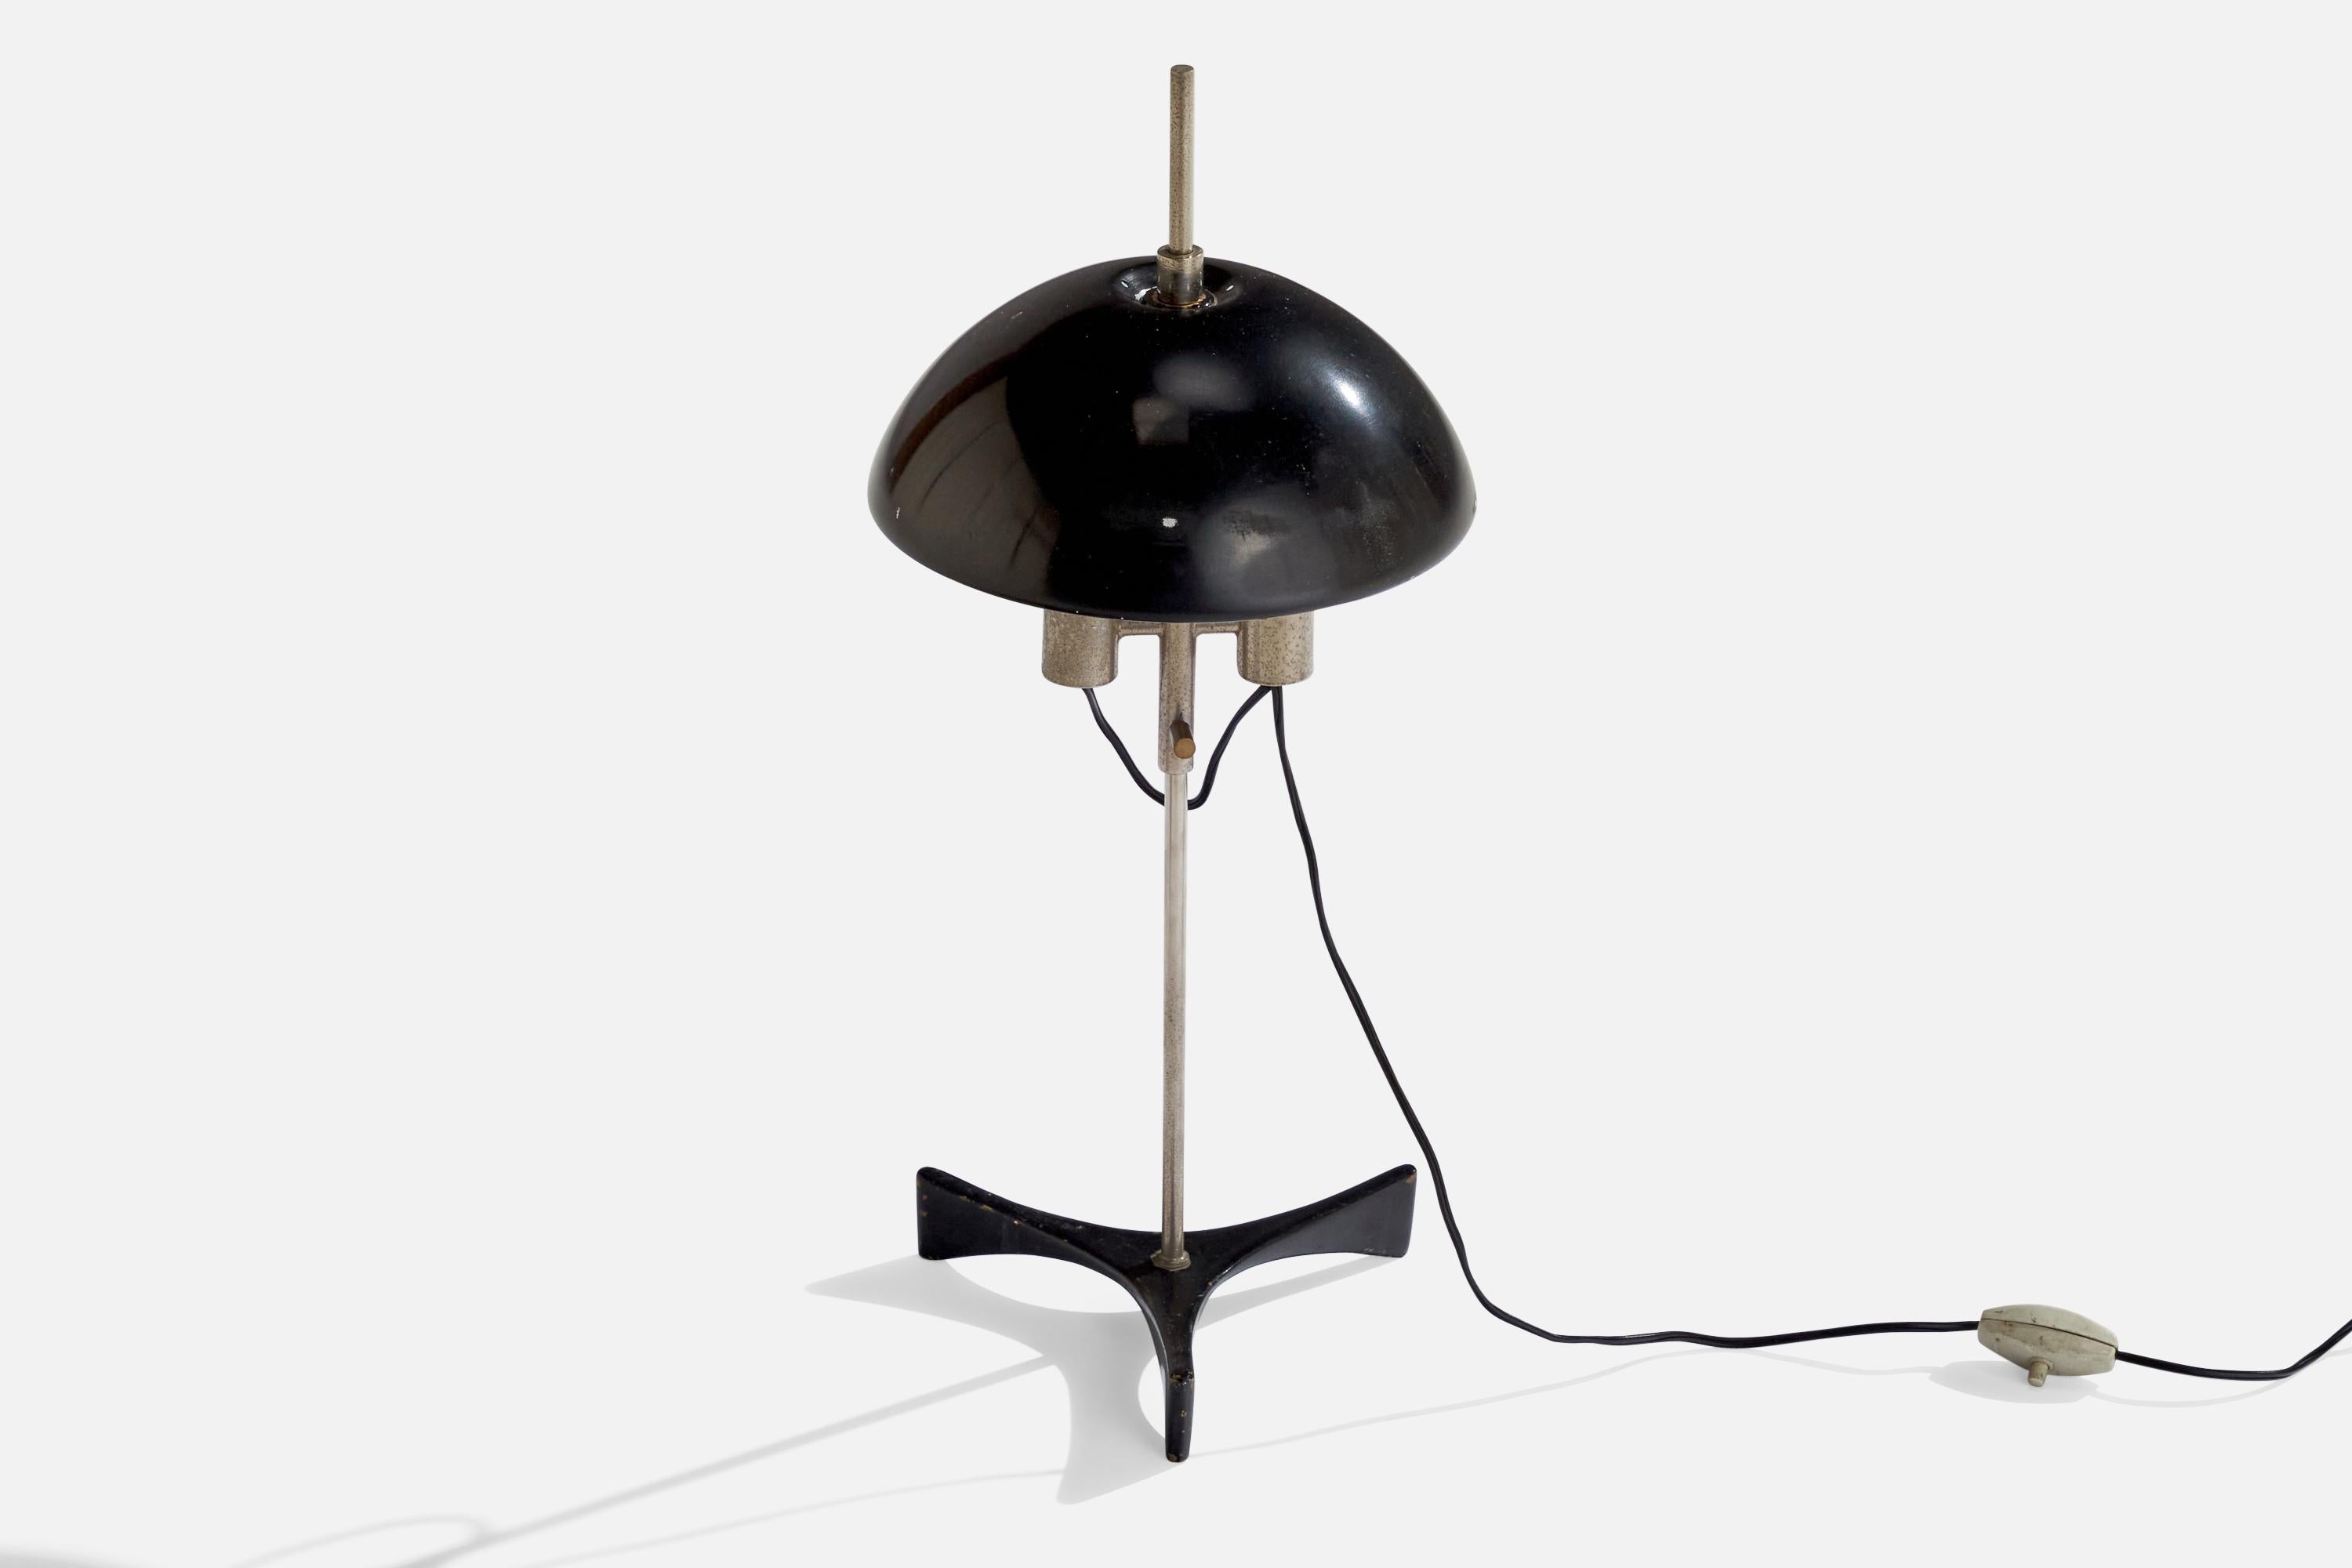 Eine Tischleuchte aus Stahl und schwarz lackiertem Metall, entworfen und hergestellt in Italien, 1950er Jahre.

Gesamtabmessungen (Zoll): 19 